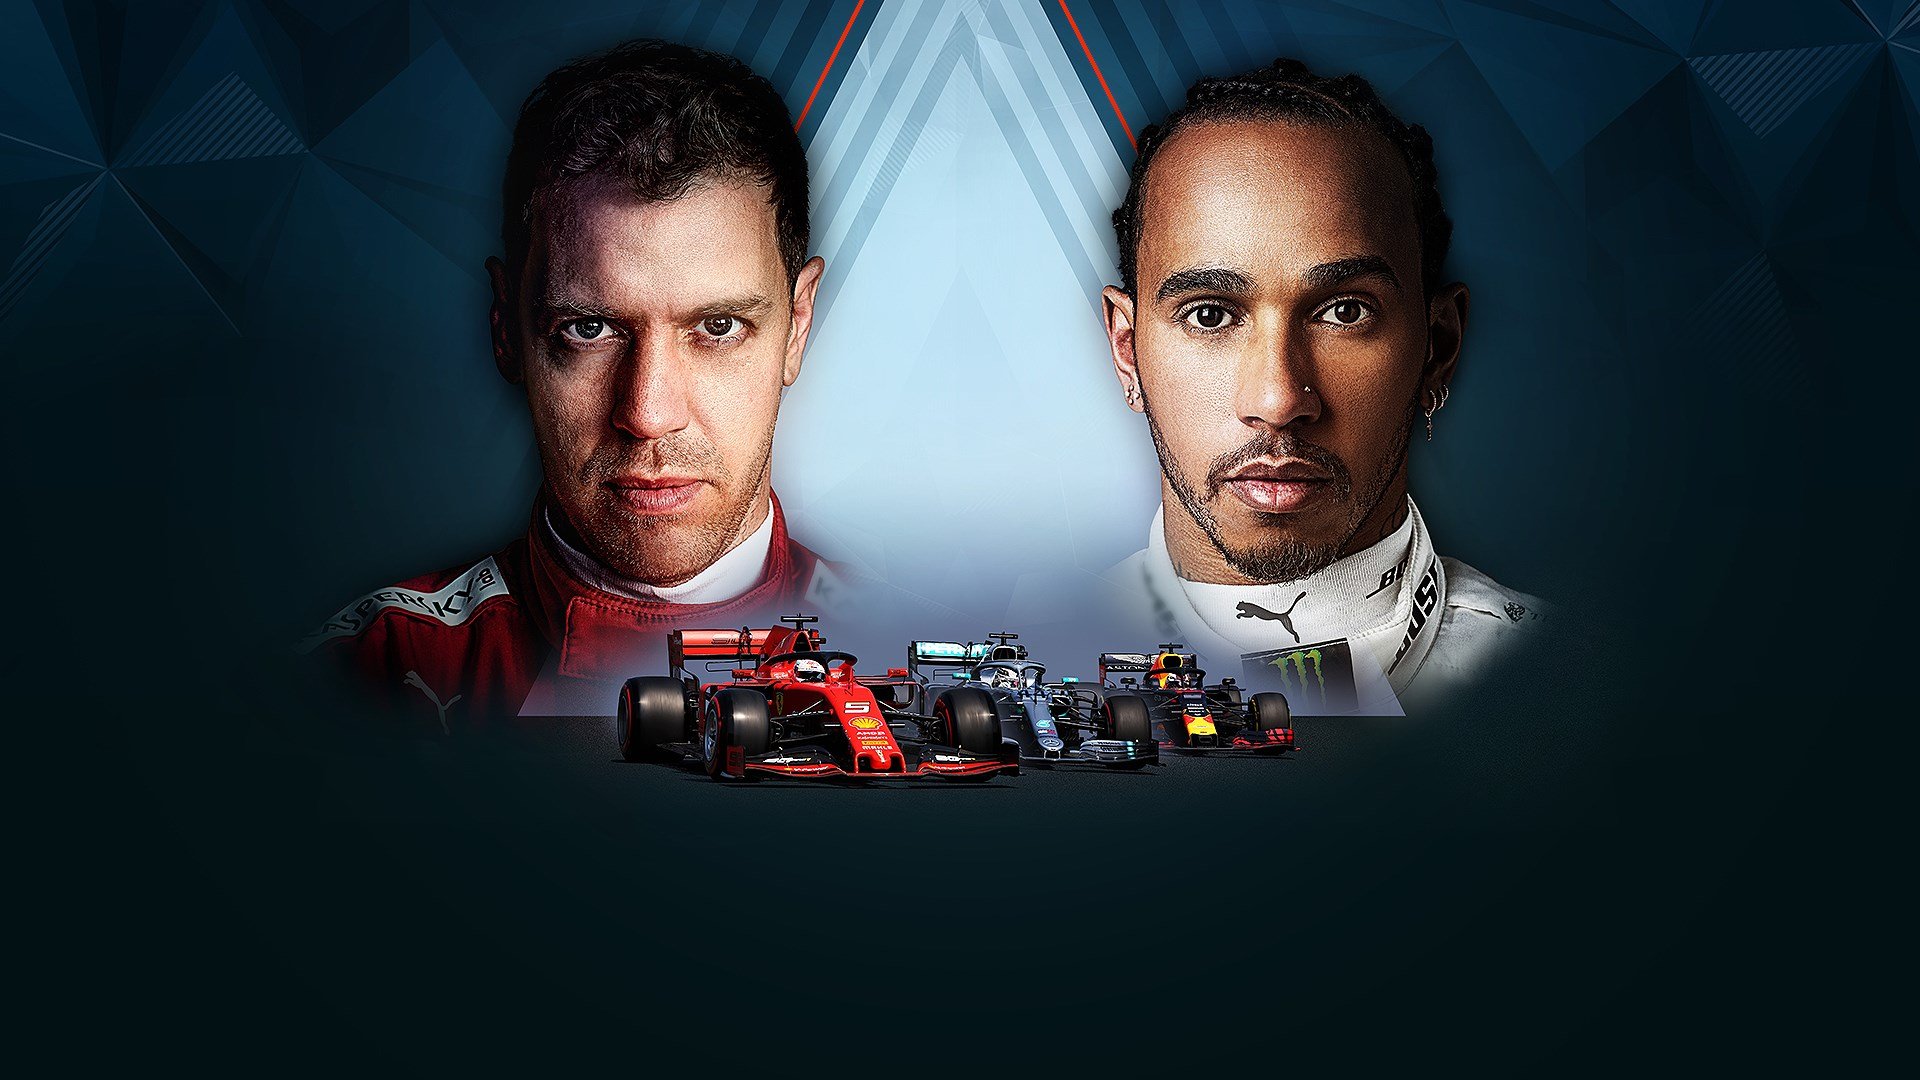 F1 2019 PC GP cover image